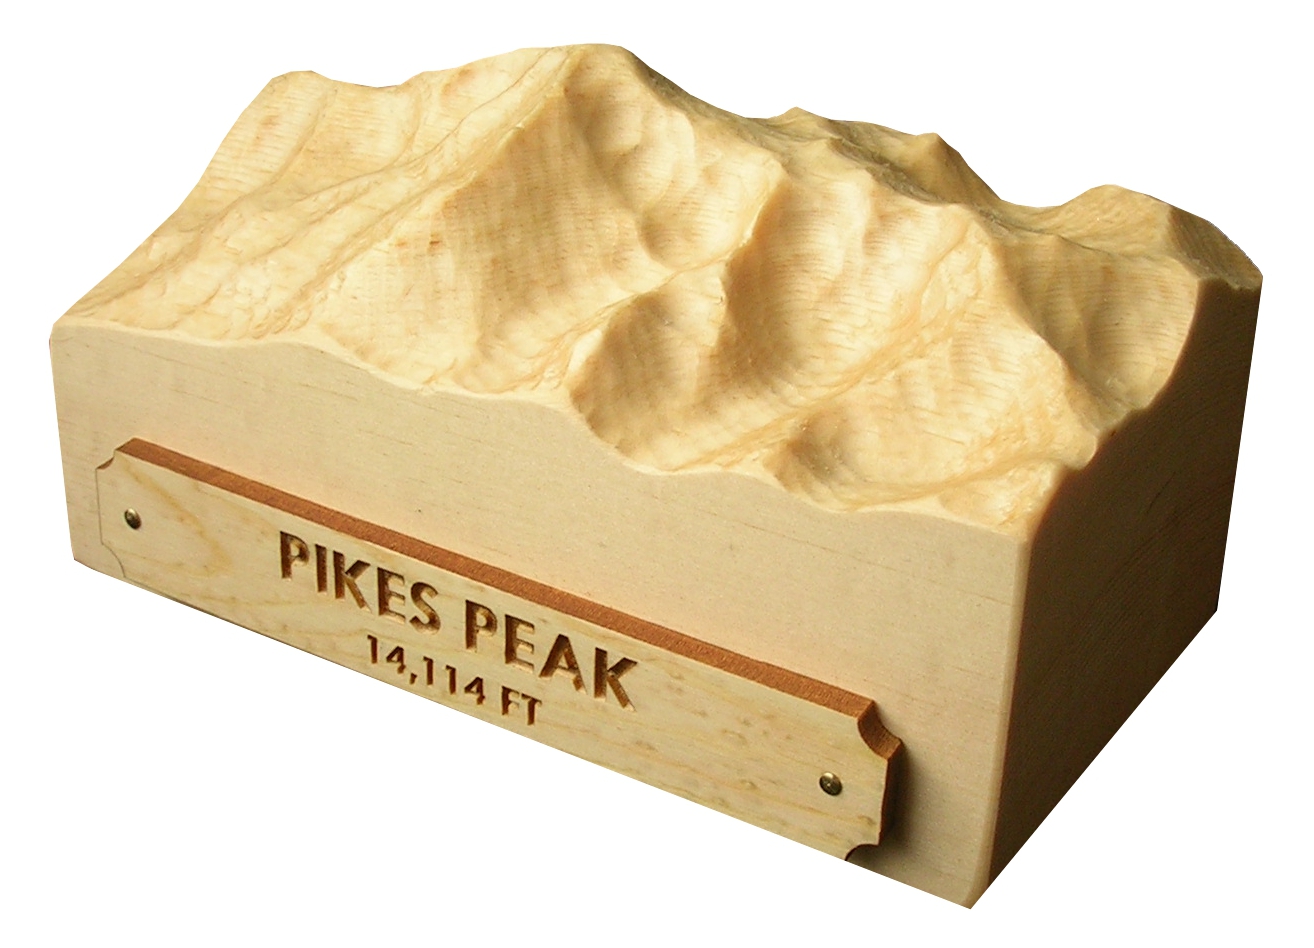 Pikes-Peak-Carving-Gift.jpg